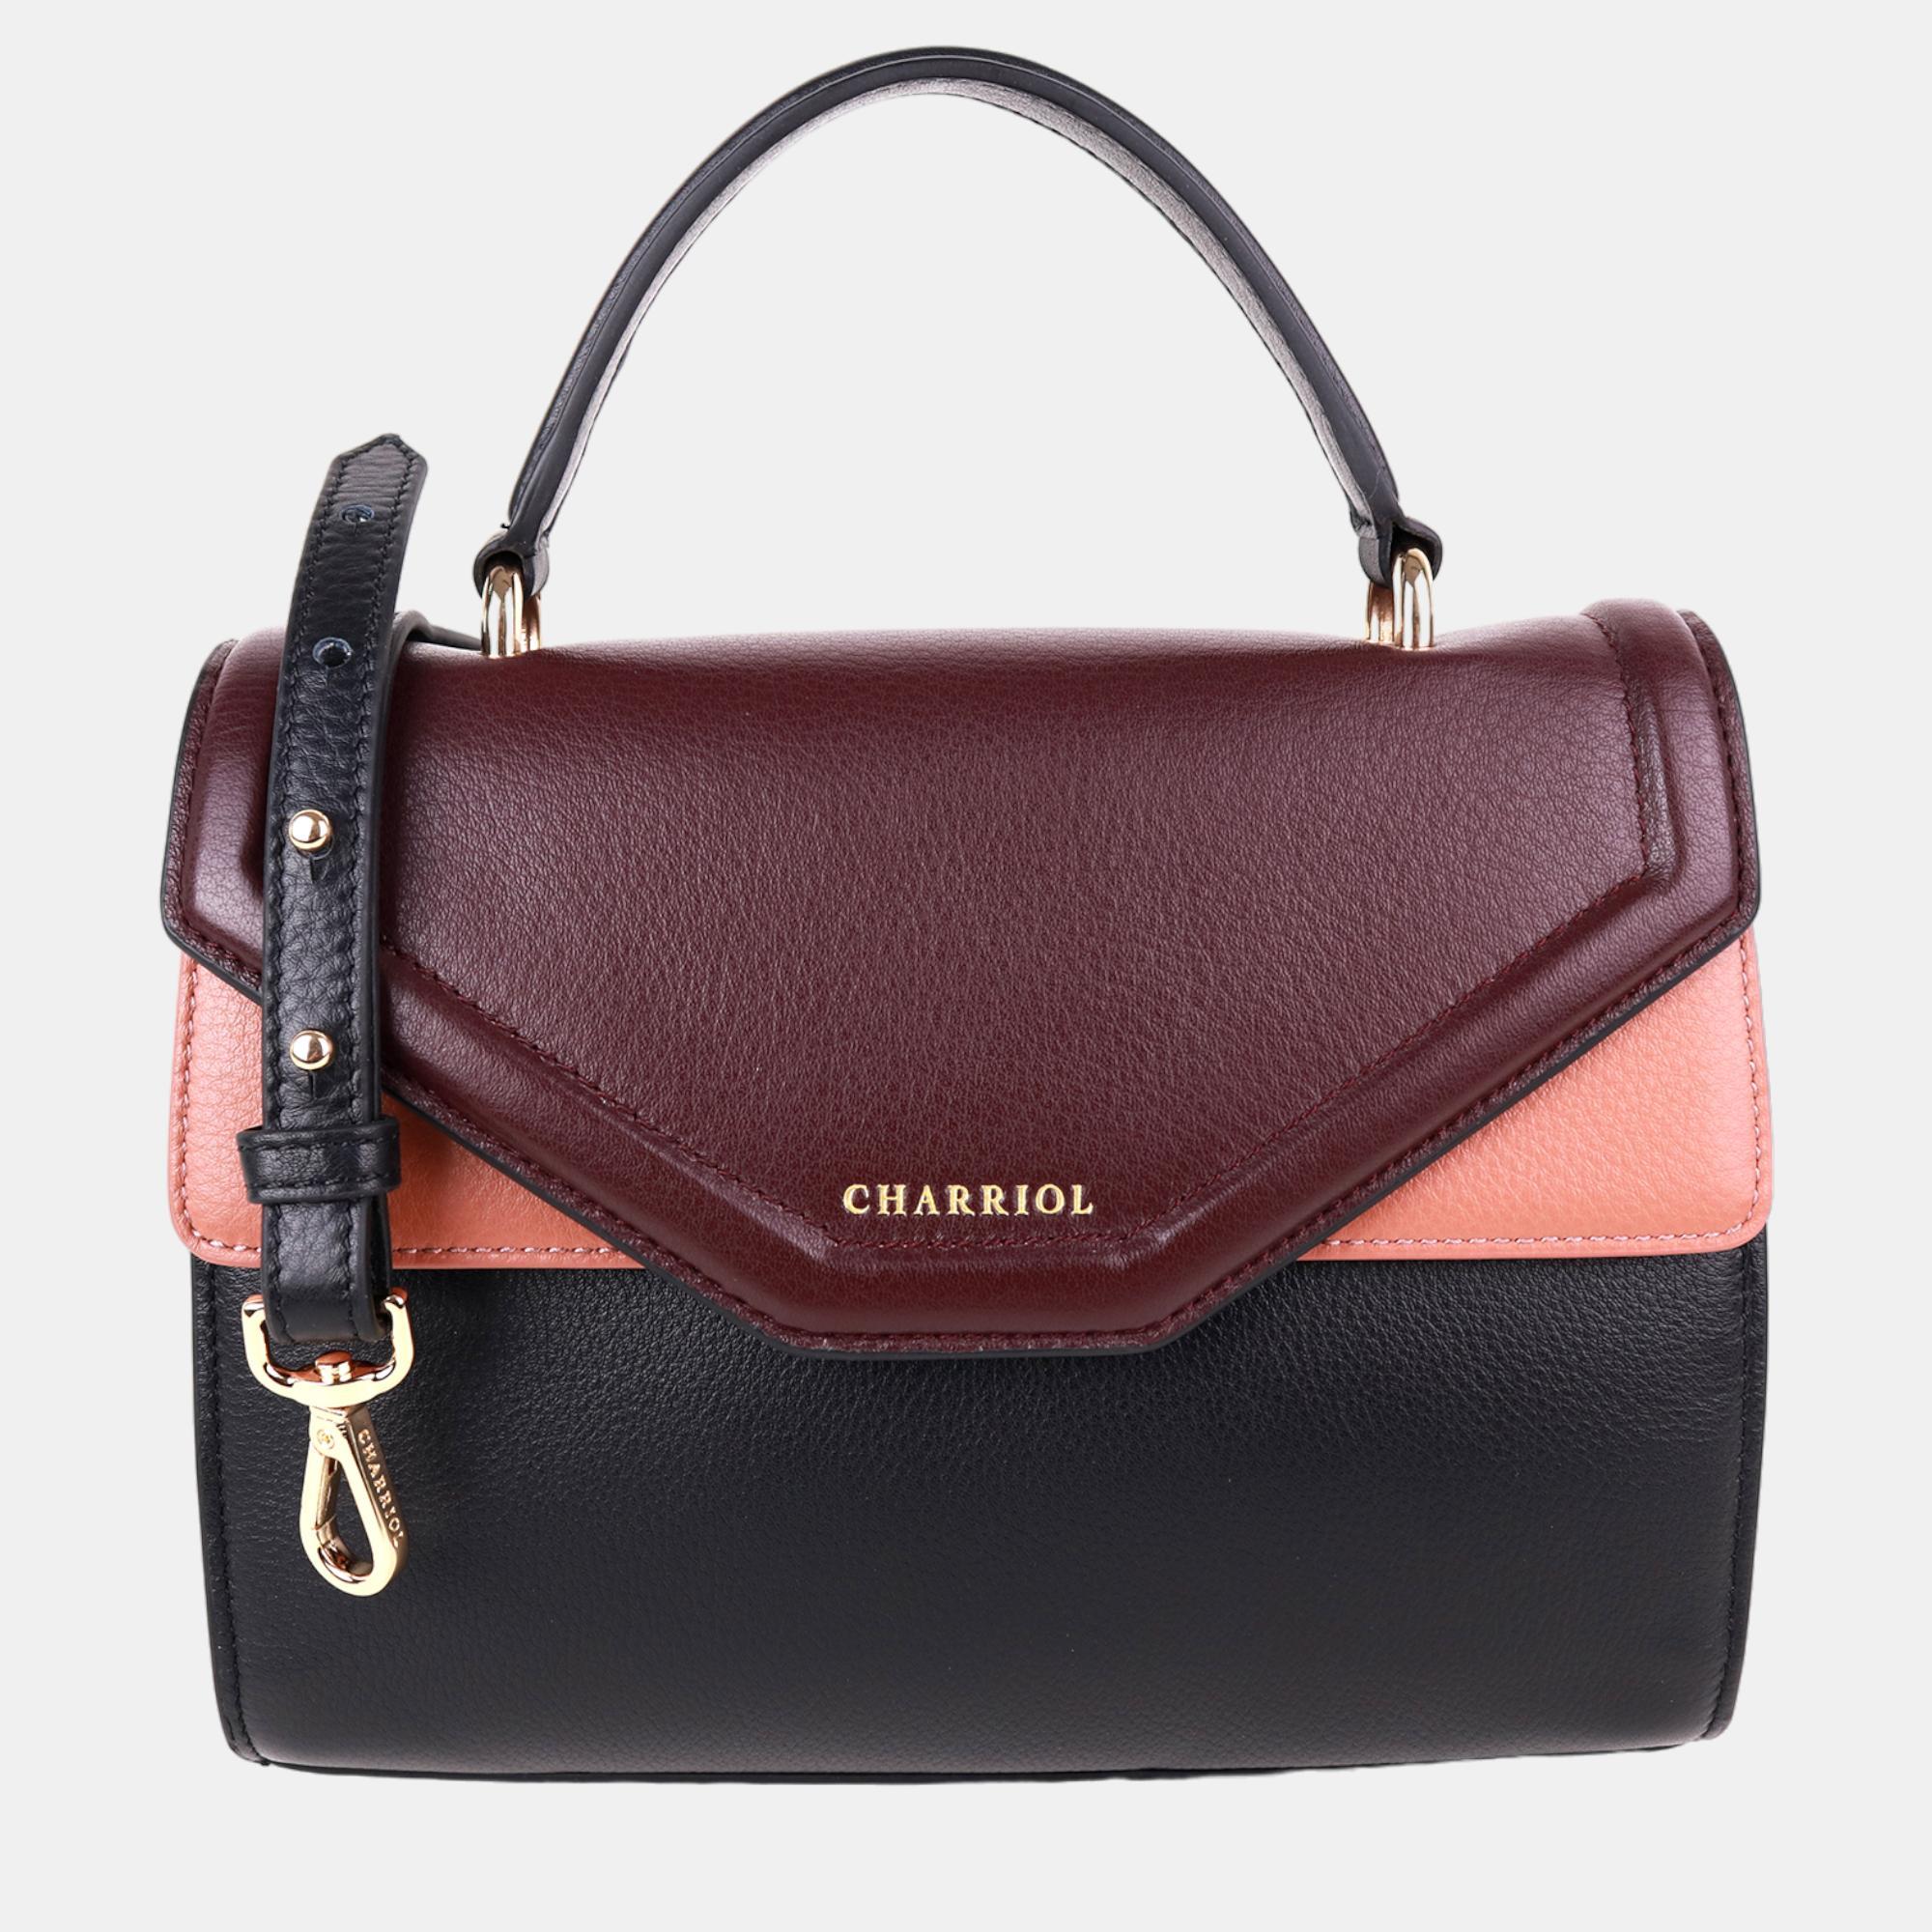 

Charriol Black/Light Brown Leather Forever Handbag